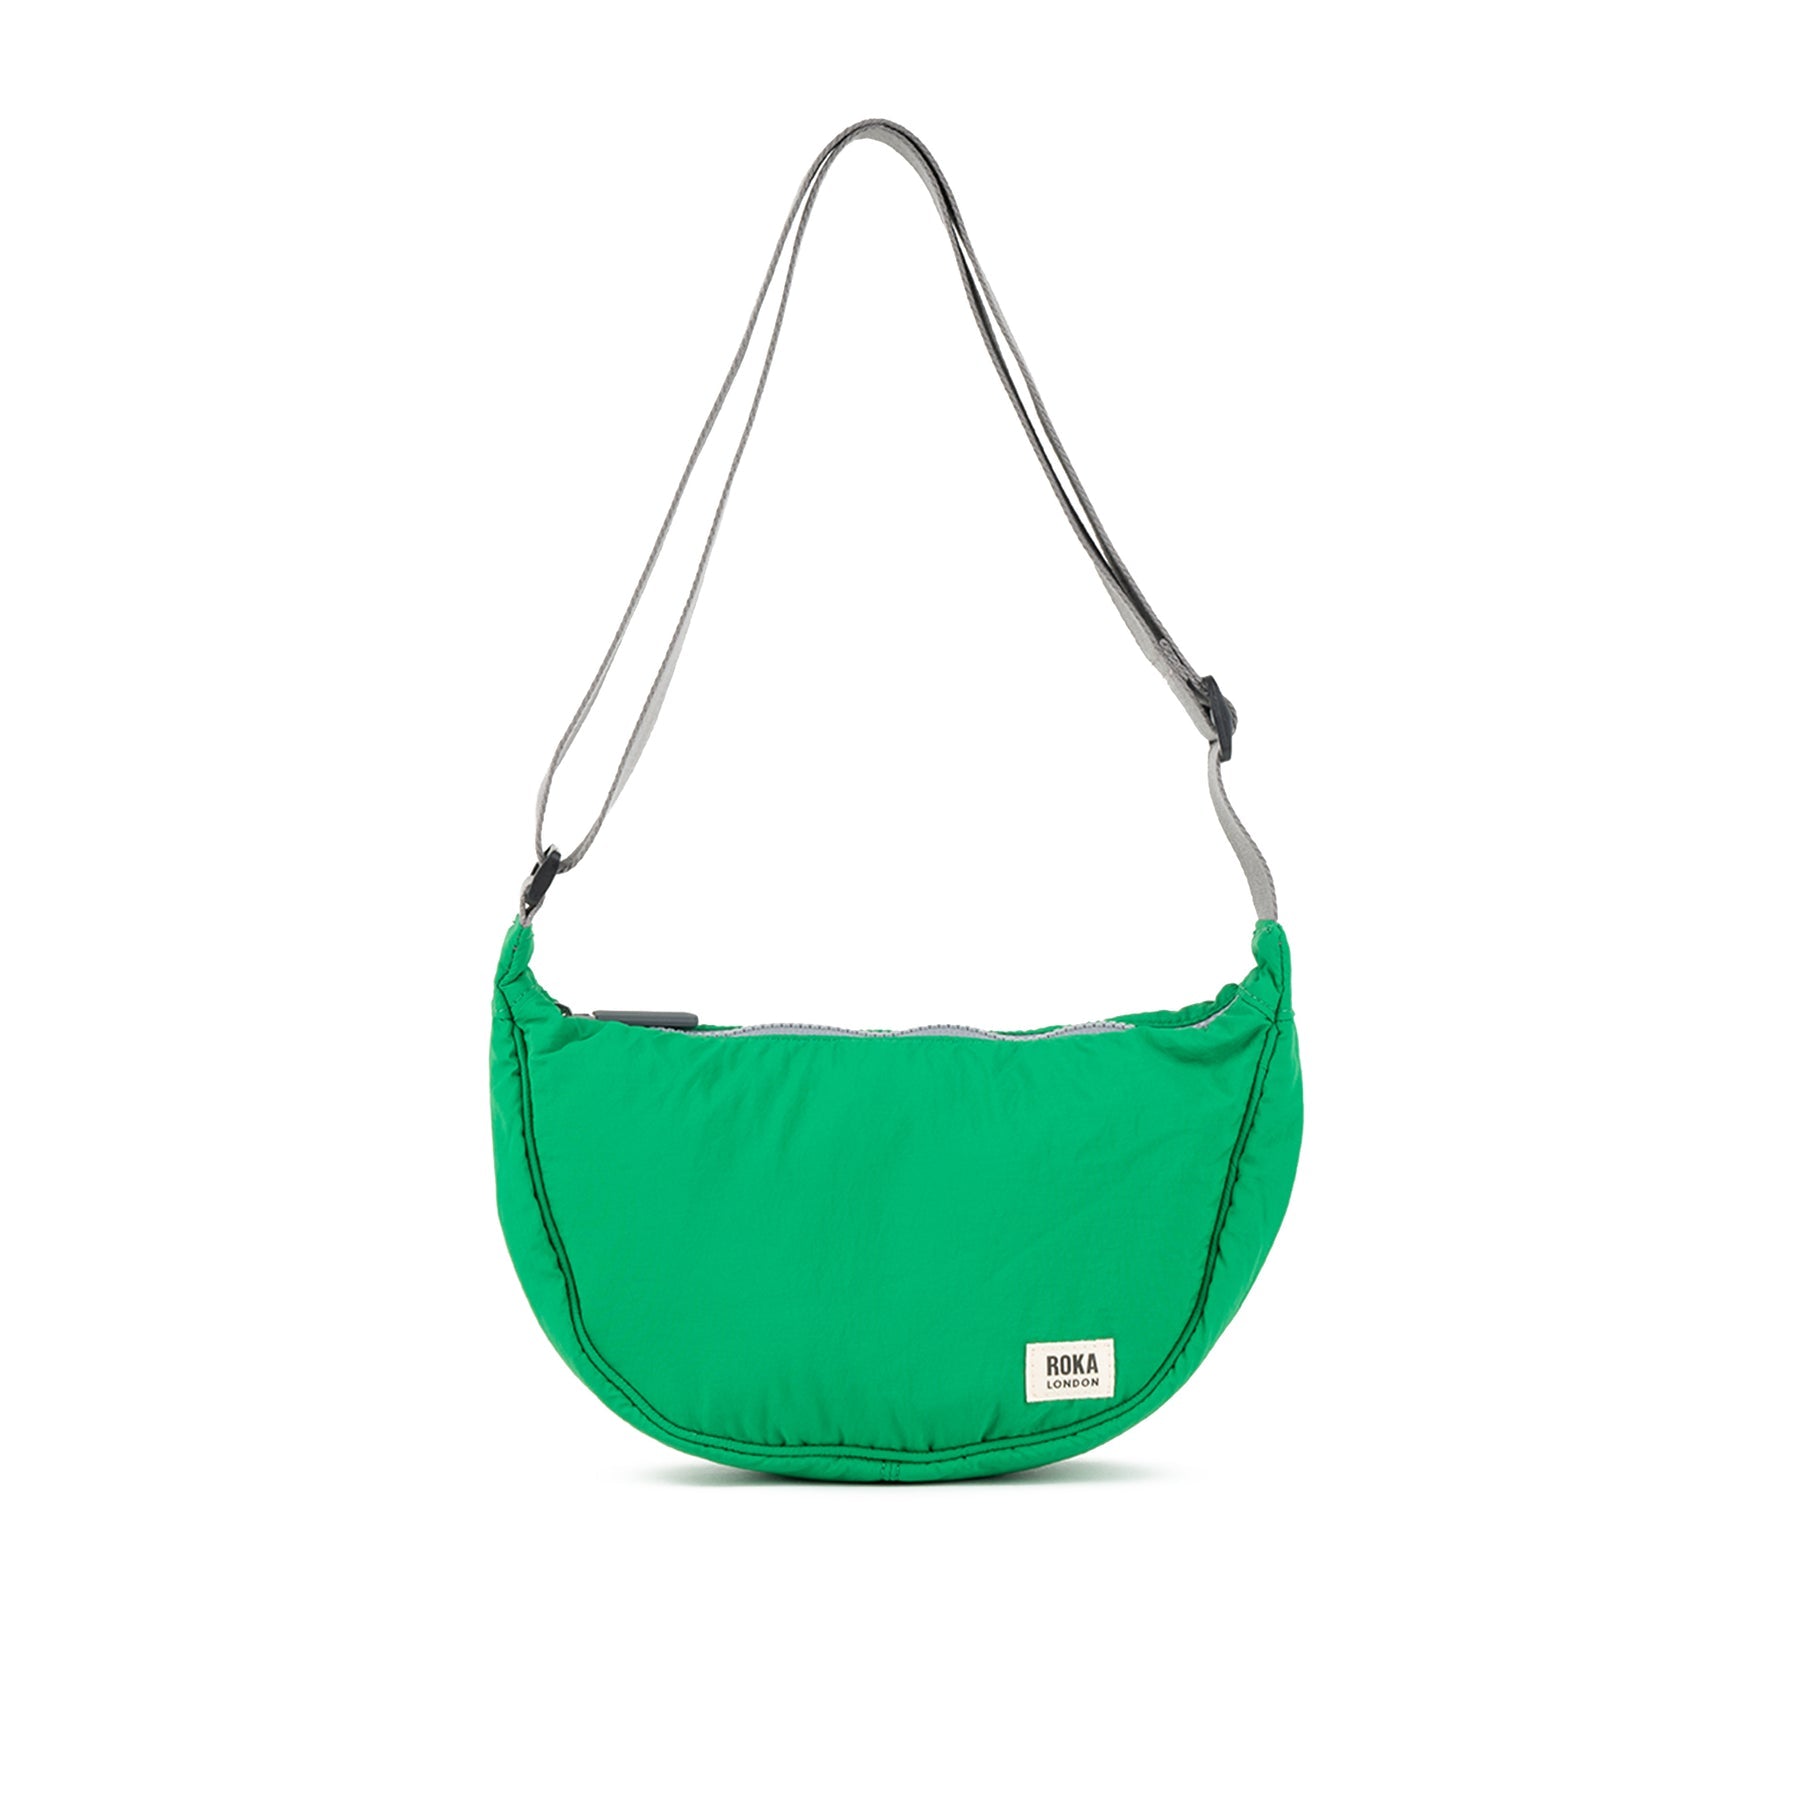 ROKA Farringdon Amazon Recycled Taslon Bag - OS